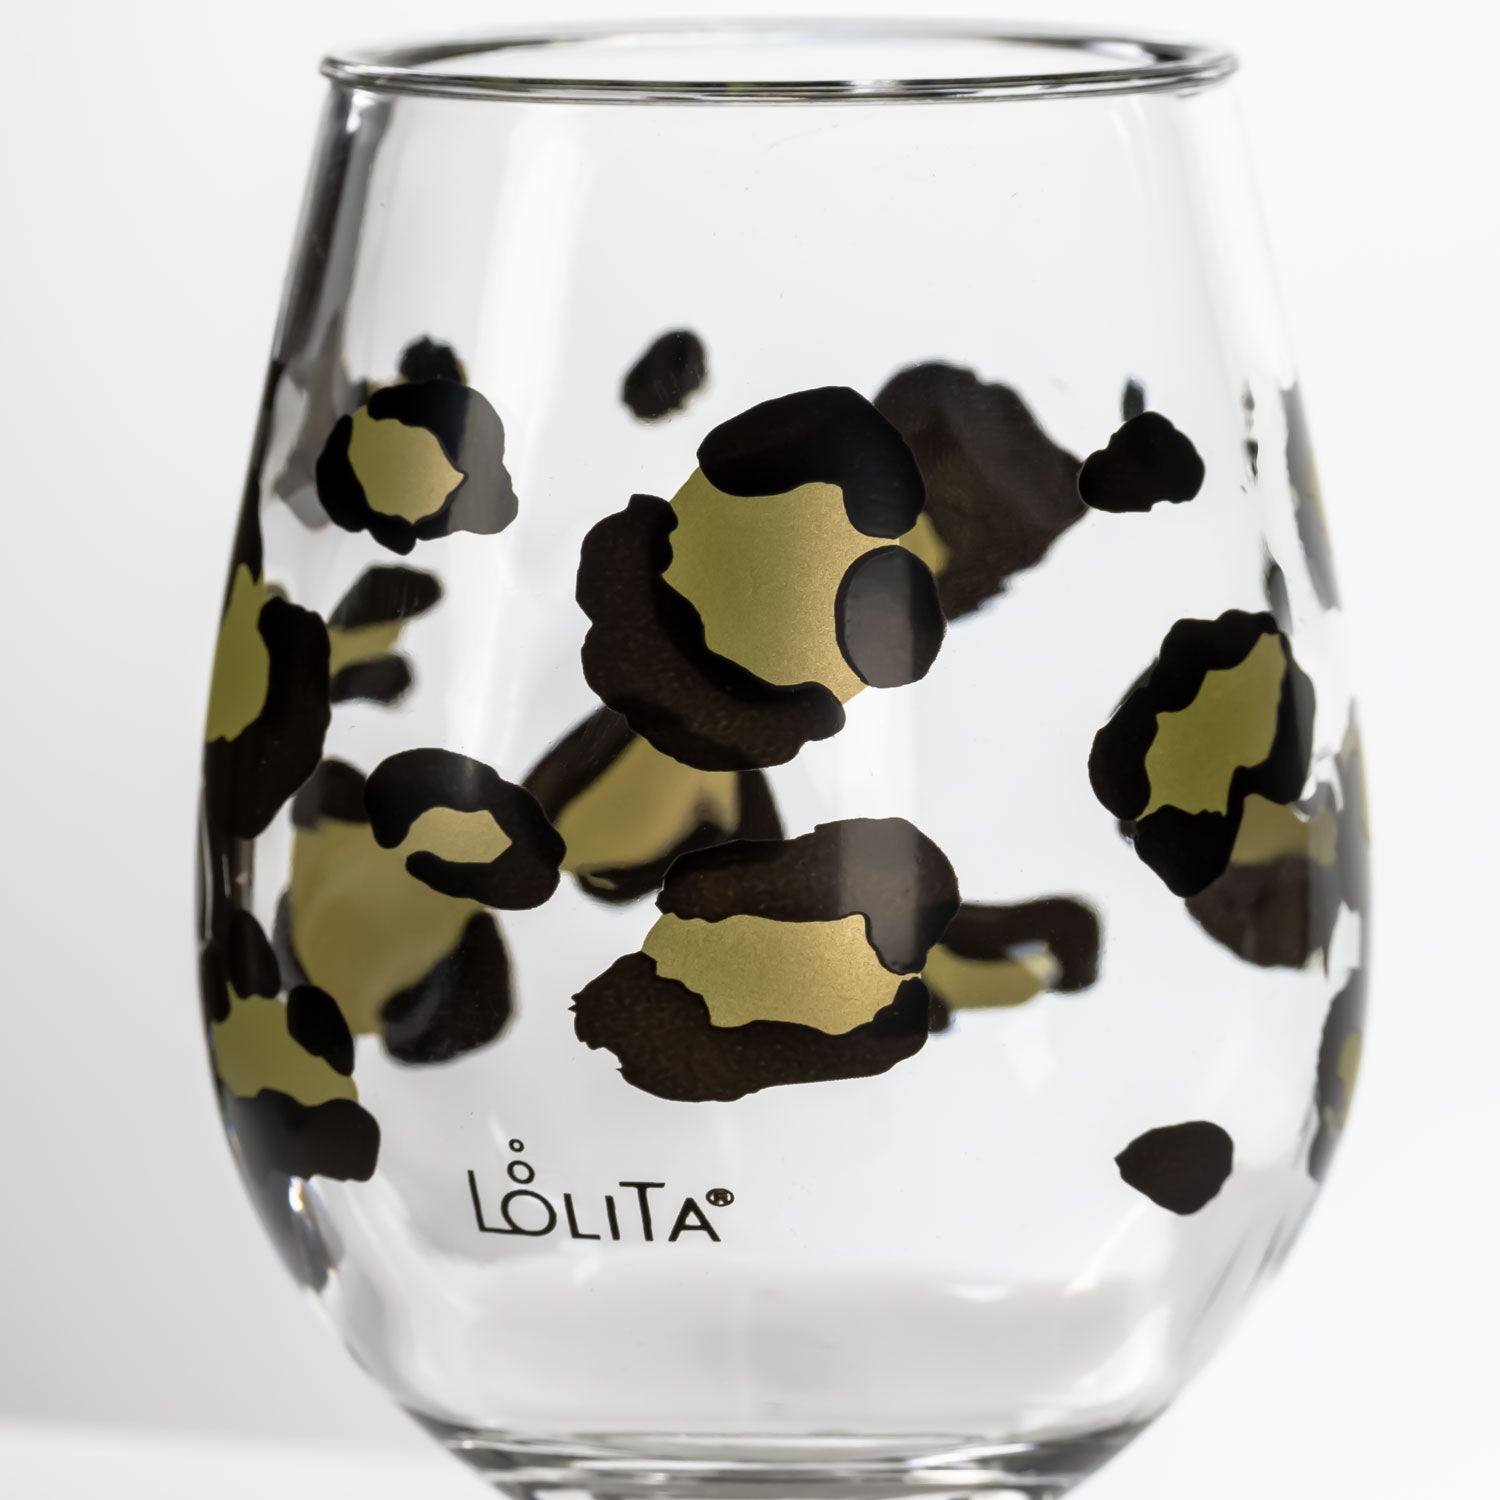 Lolita Leopard Print Party to go 15oz Acrylic Stemless Wine Glass